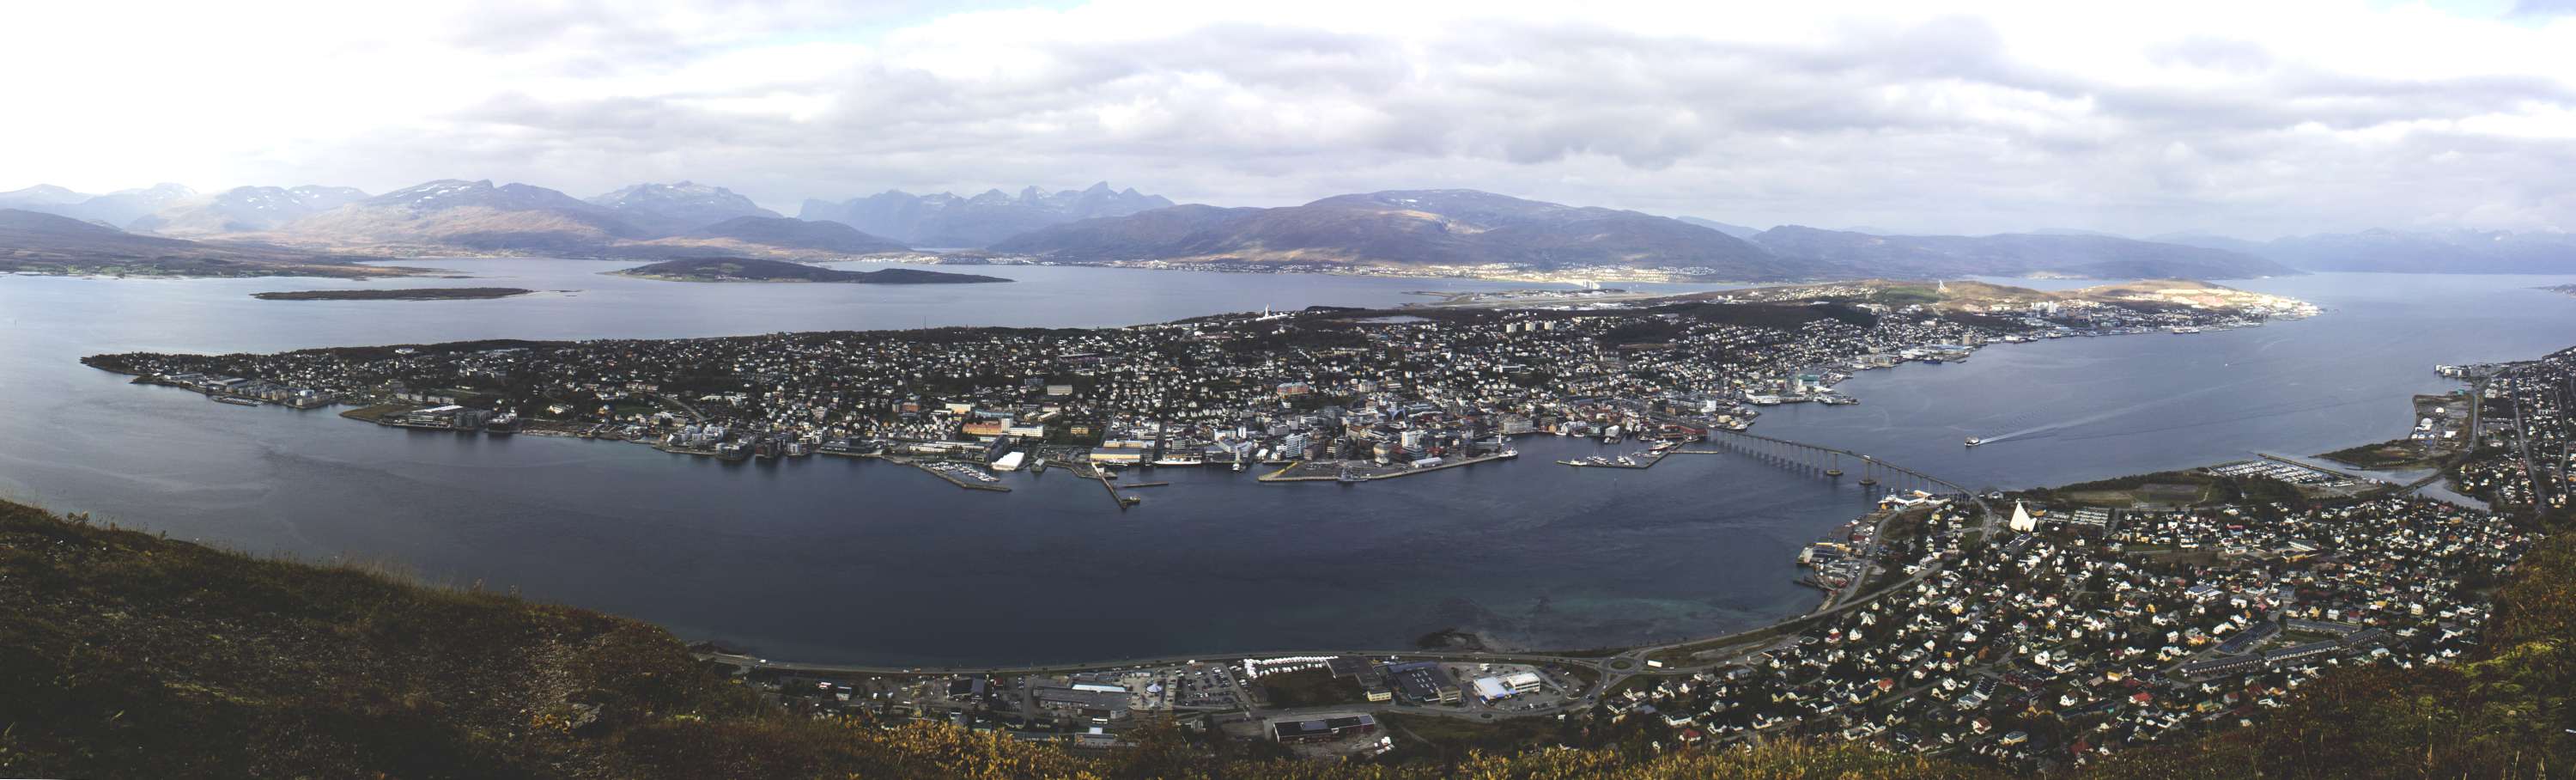 Tromso Panorama_5-3000.jpg